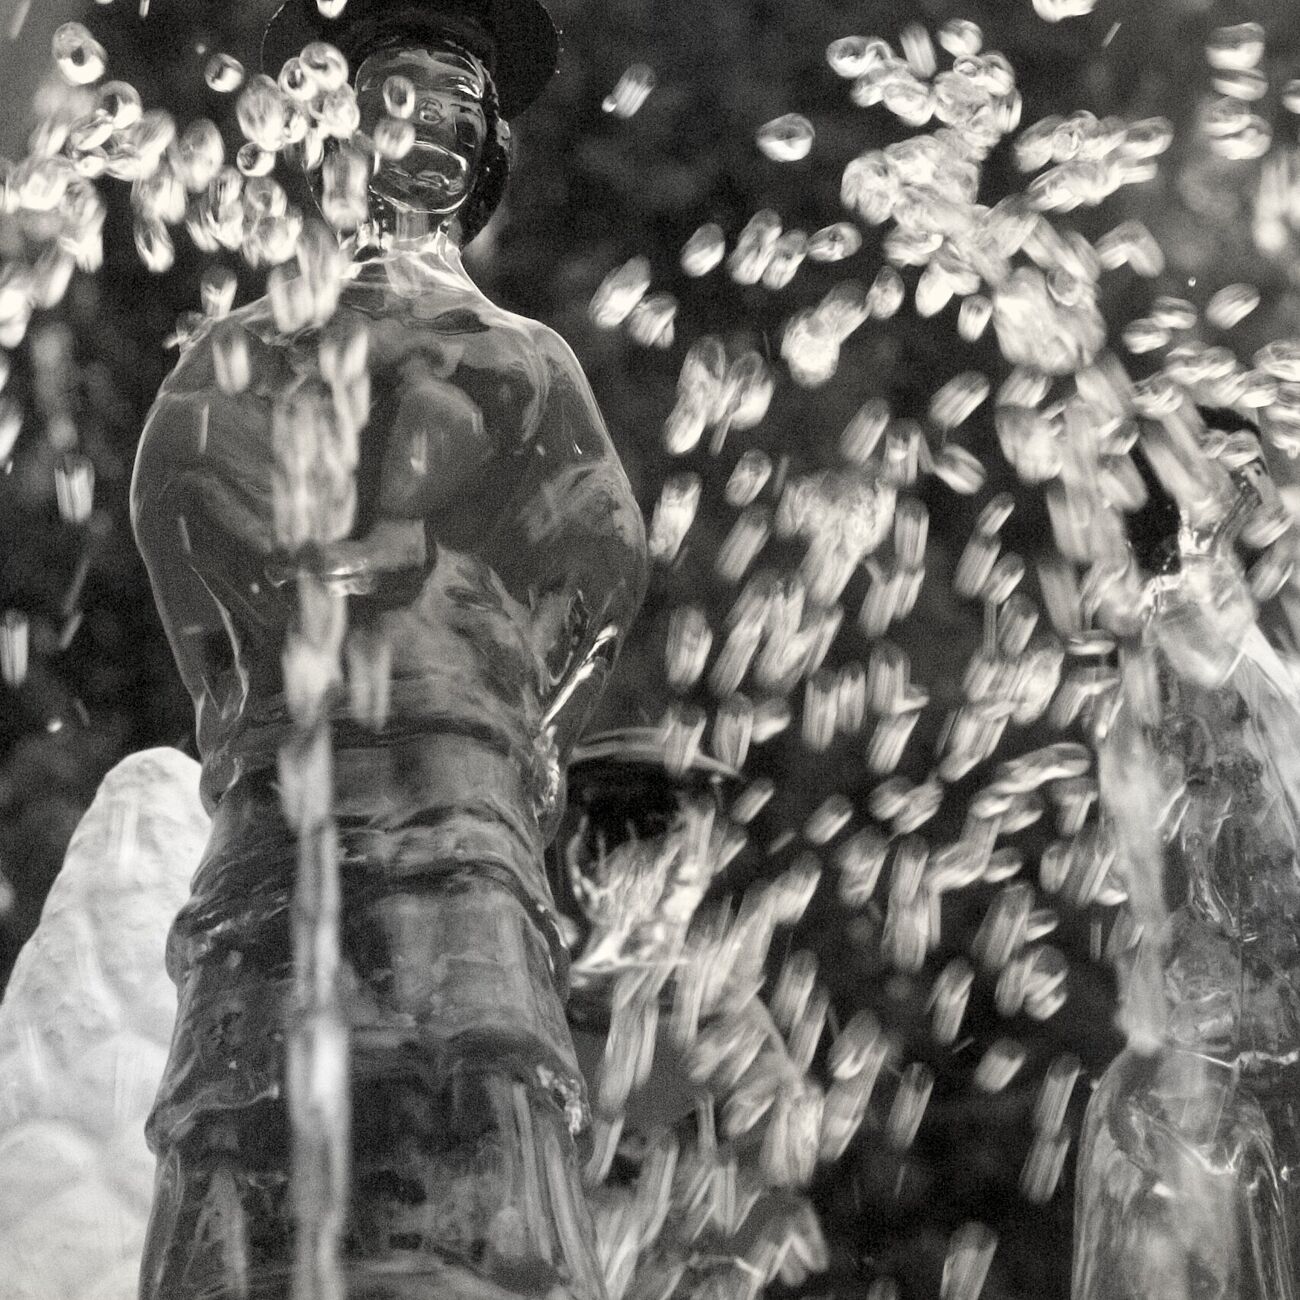 Achat d'une photographie 13 x 13 cm, Sparkling fountain. Ref-459-19 - Denis Olivier Photographie d'Art